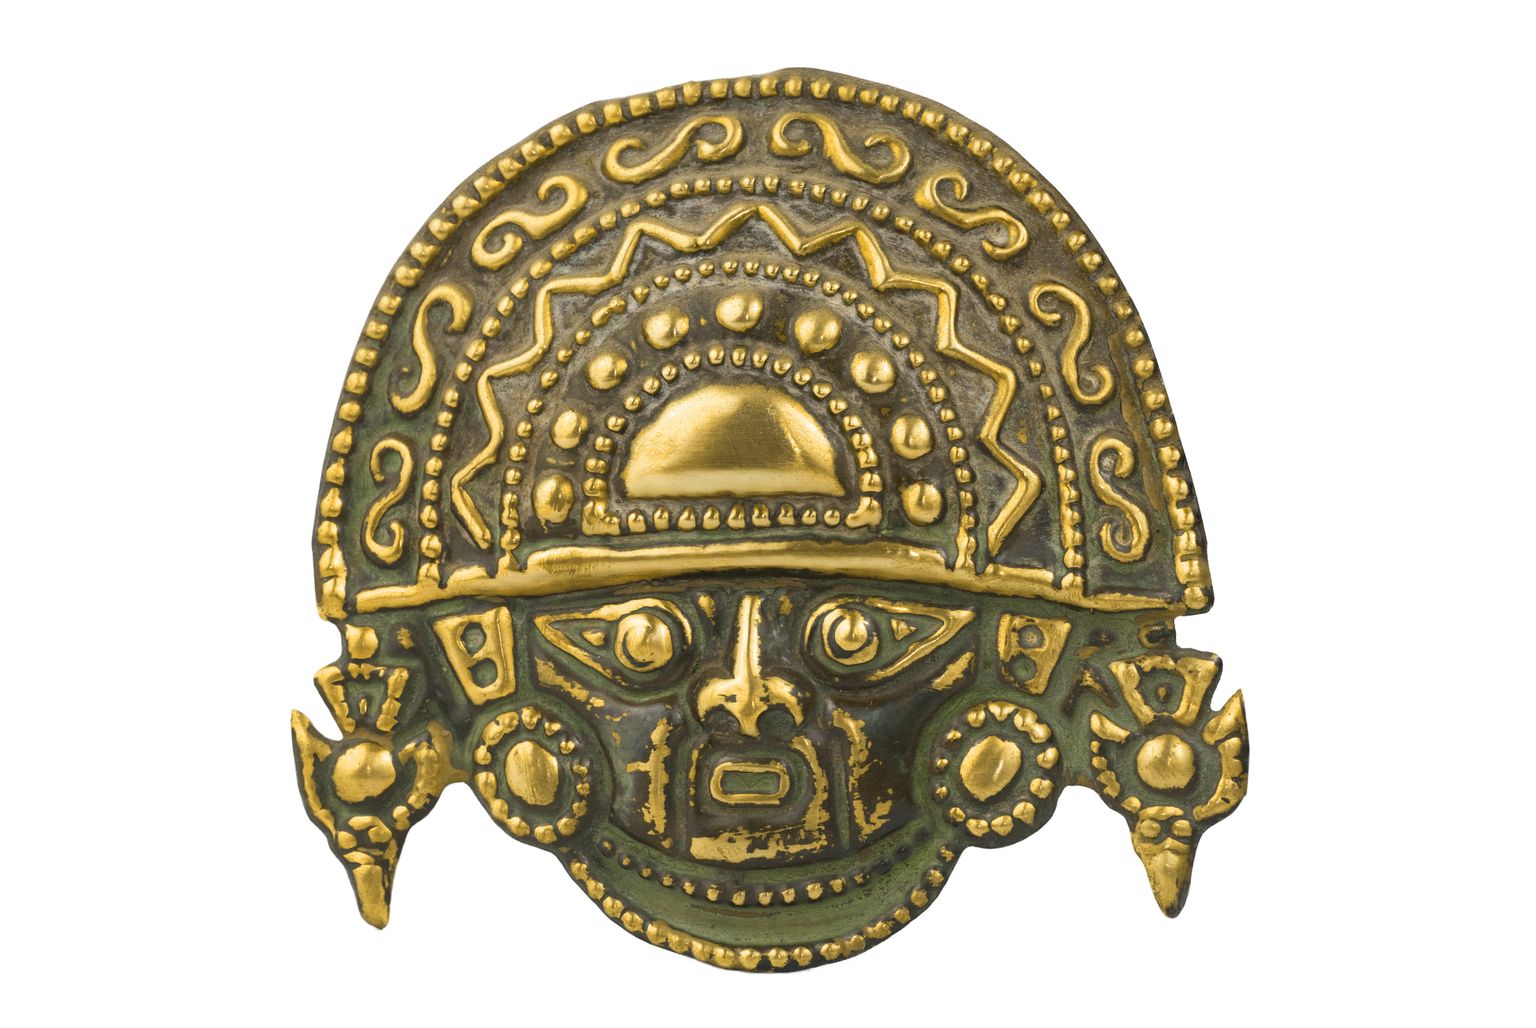 Peruust leitud iidne kuldmask. Pilt on illustreeriv